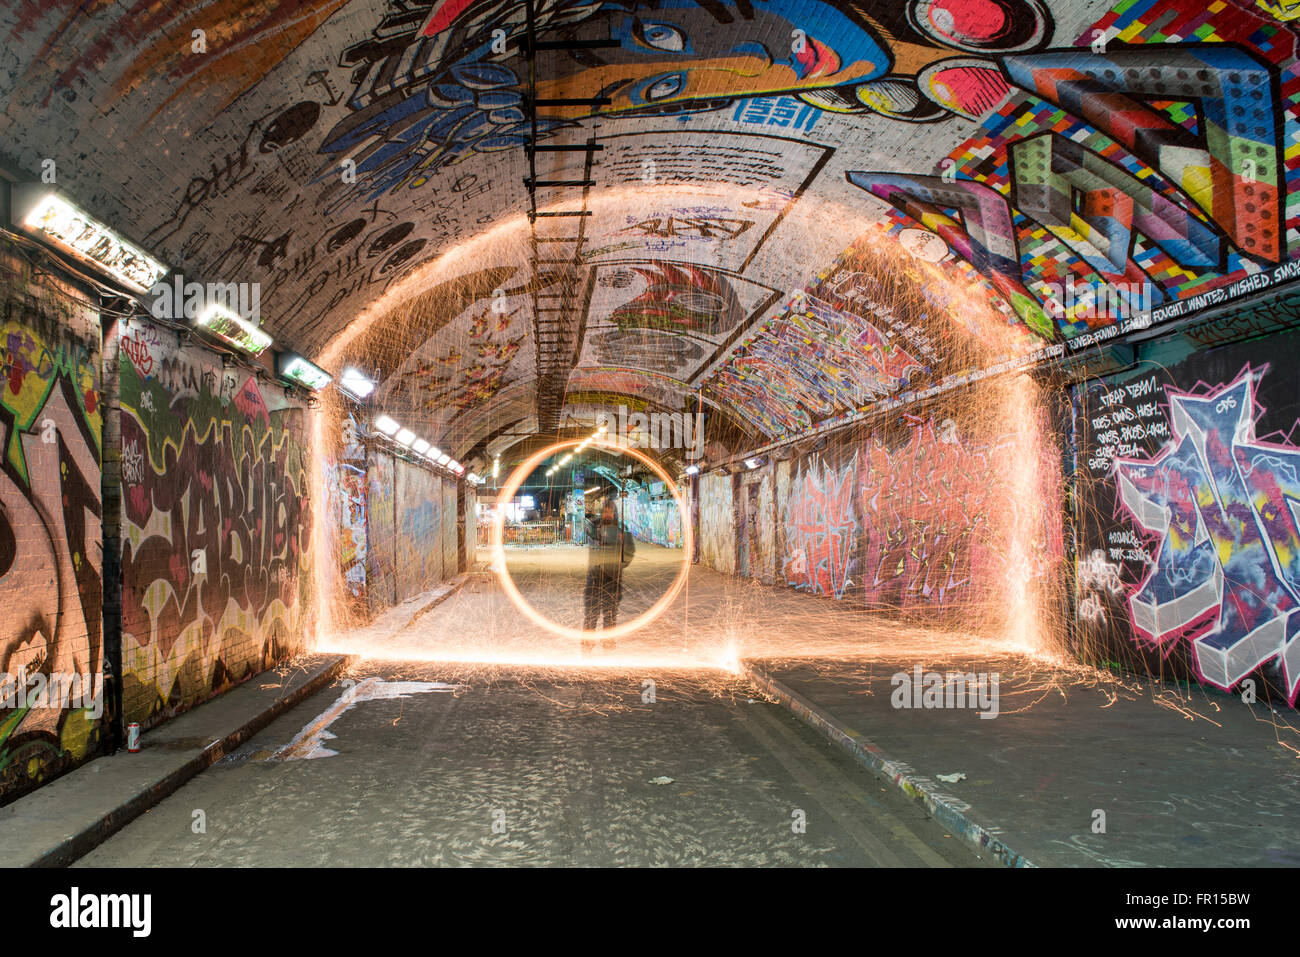 Silhouette of man la filature de laine fil lumineux la nuit à l'intérieur de tunnel graffiti Waterloo à Londres, Royaume-Uni Banque D'Images